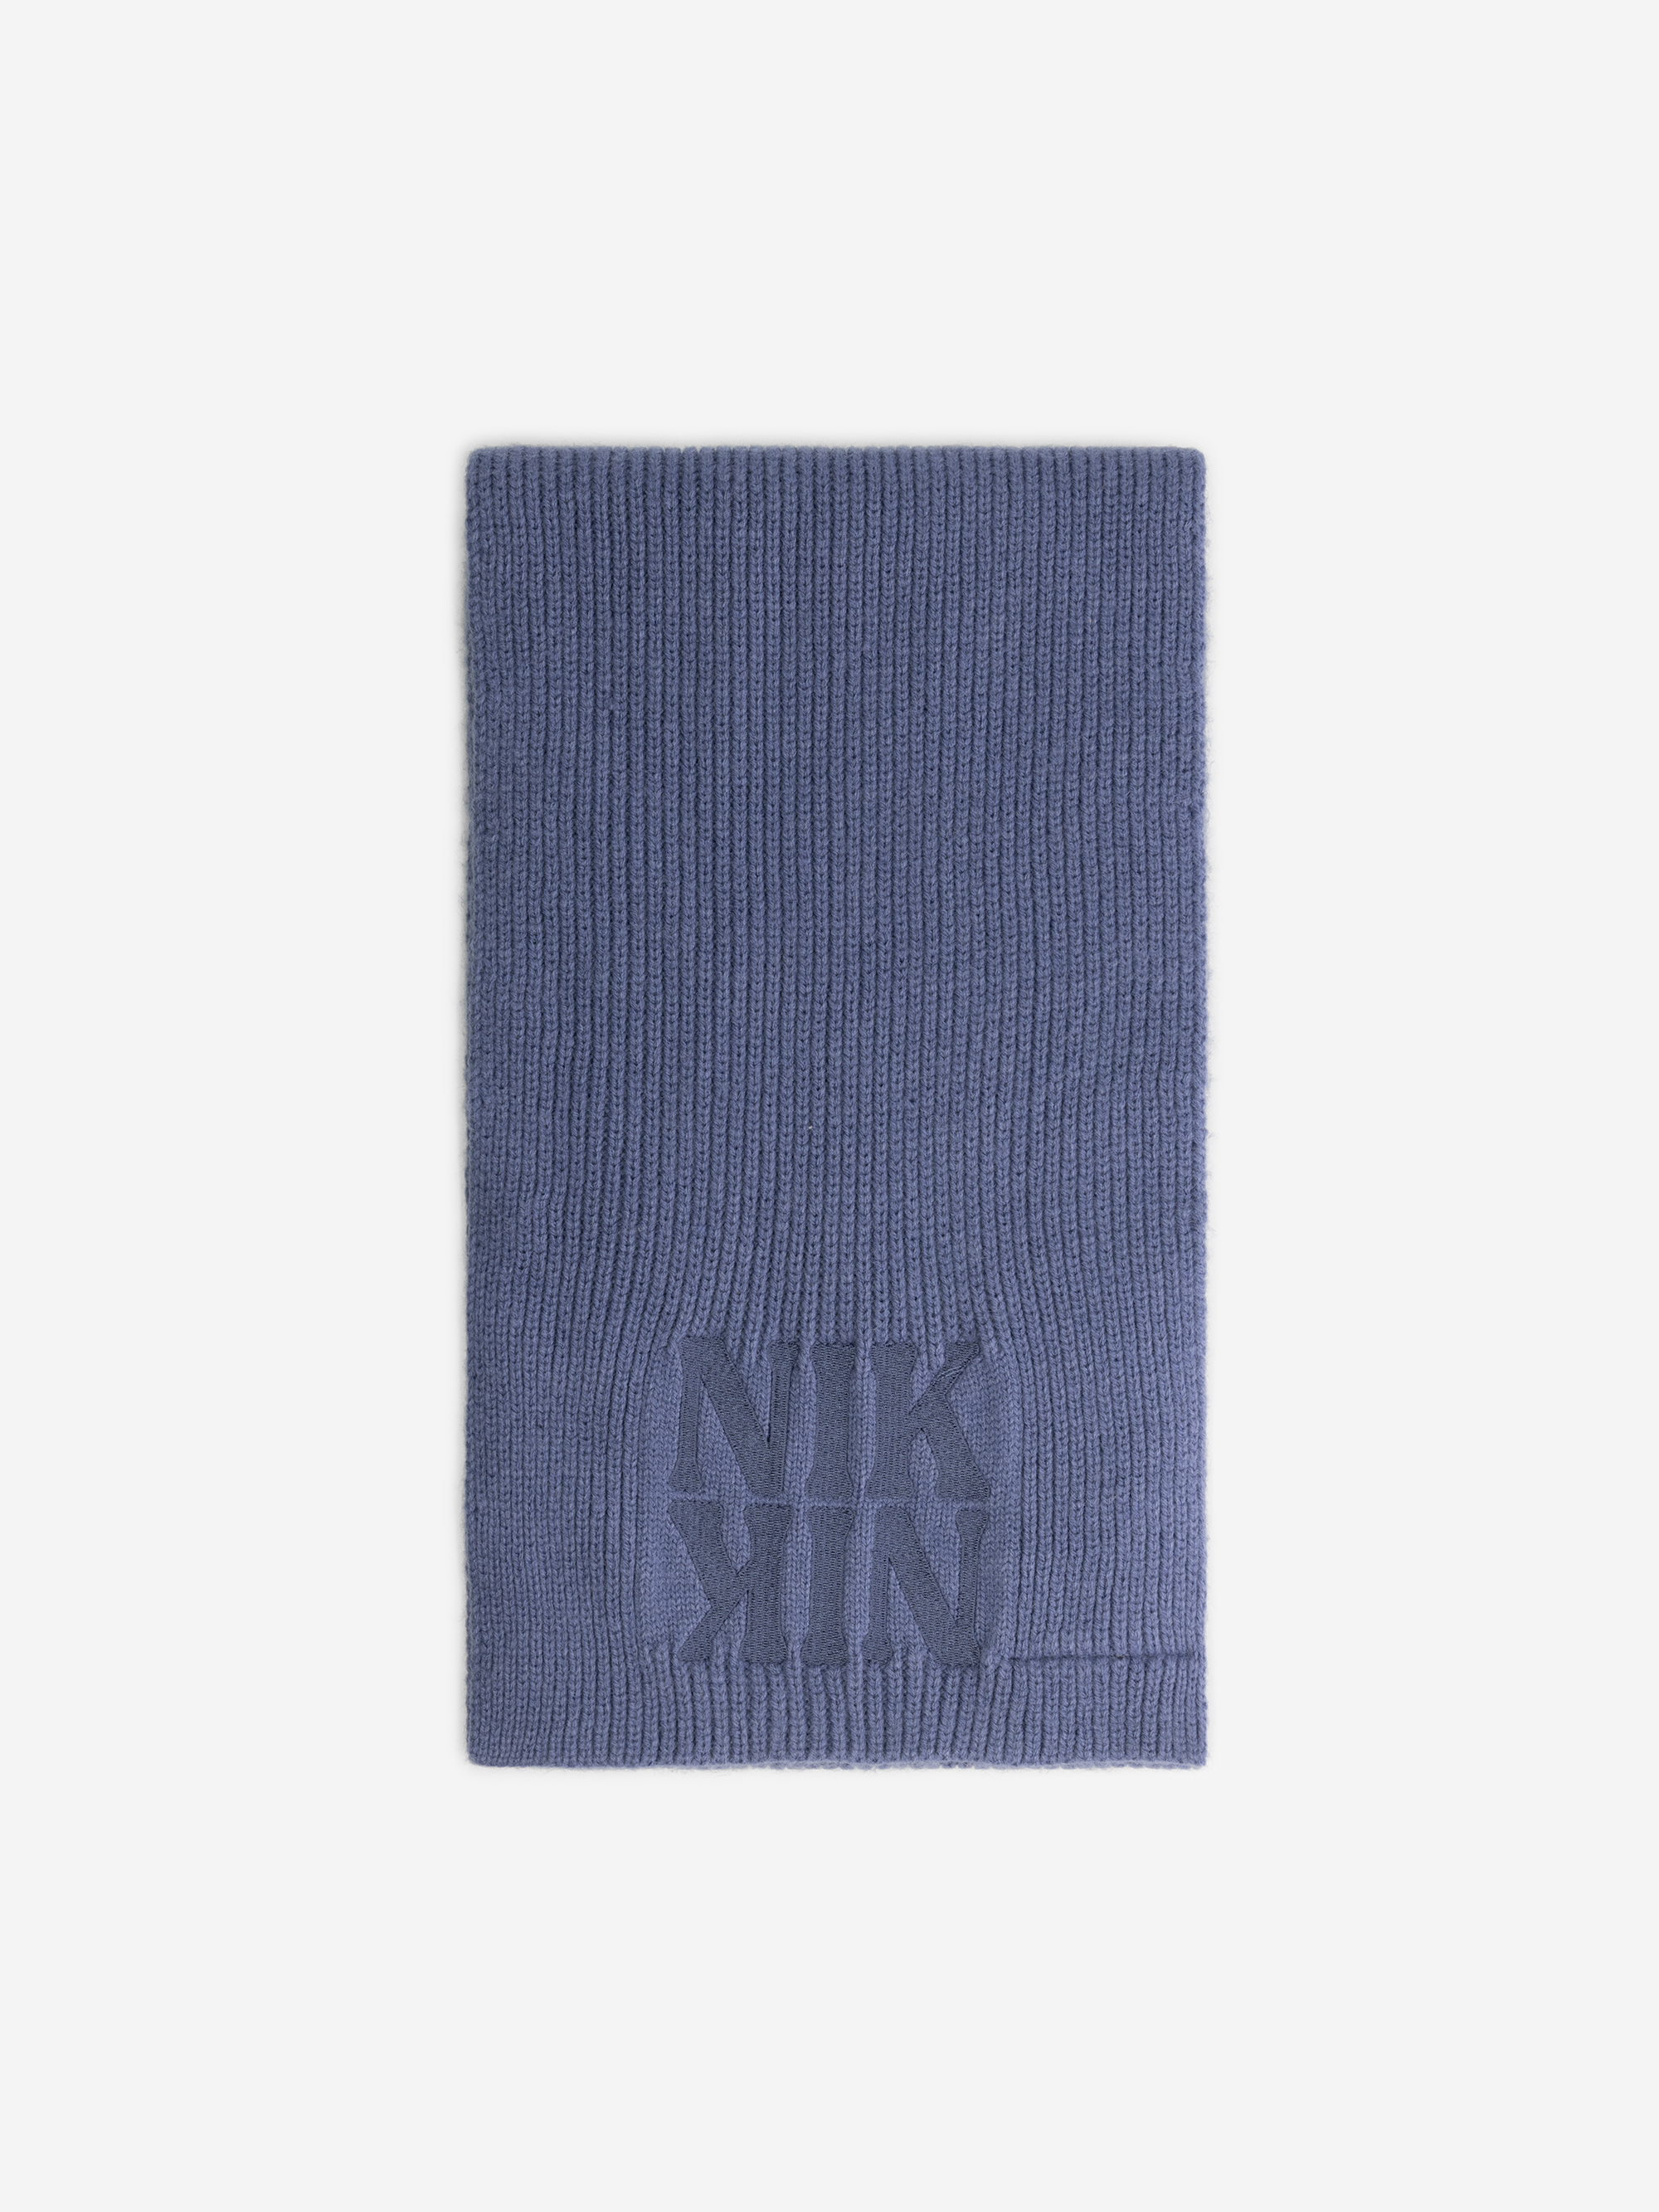 N&N scarf